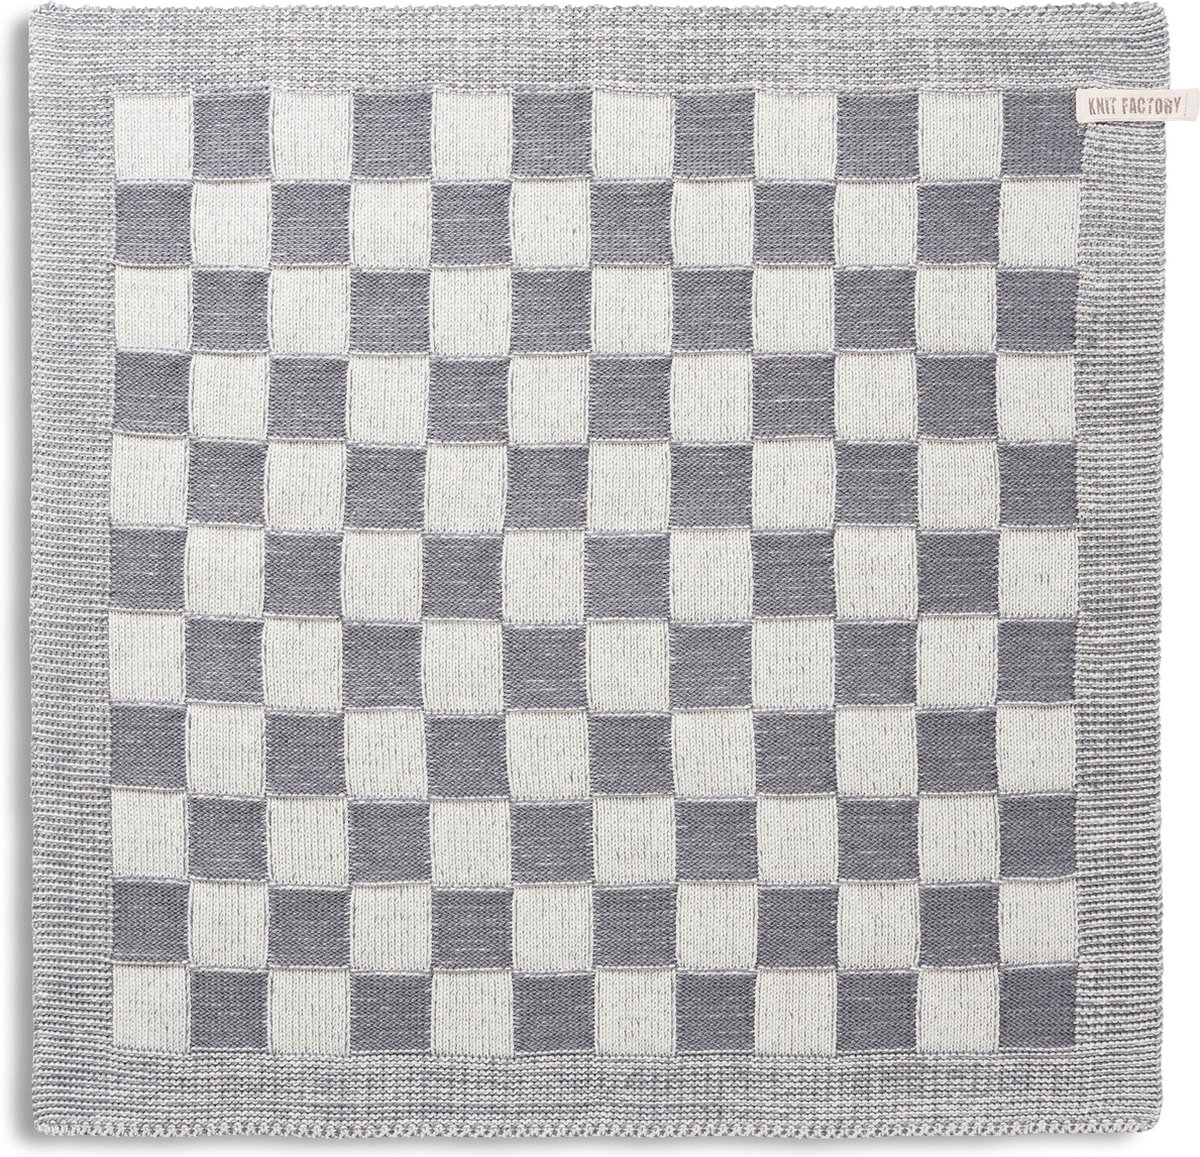 Knit Factory Gebreide Keukendoek - Keukenhanddoek Block - Geblokt motief - Handdoek - Vaatdoek - Keuken doek - Ecru/Med Grey - Traditionele look - 50x50 cm